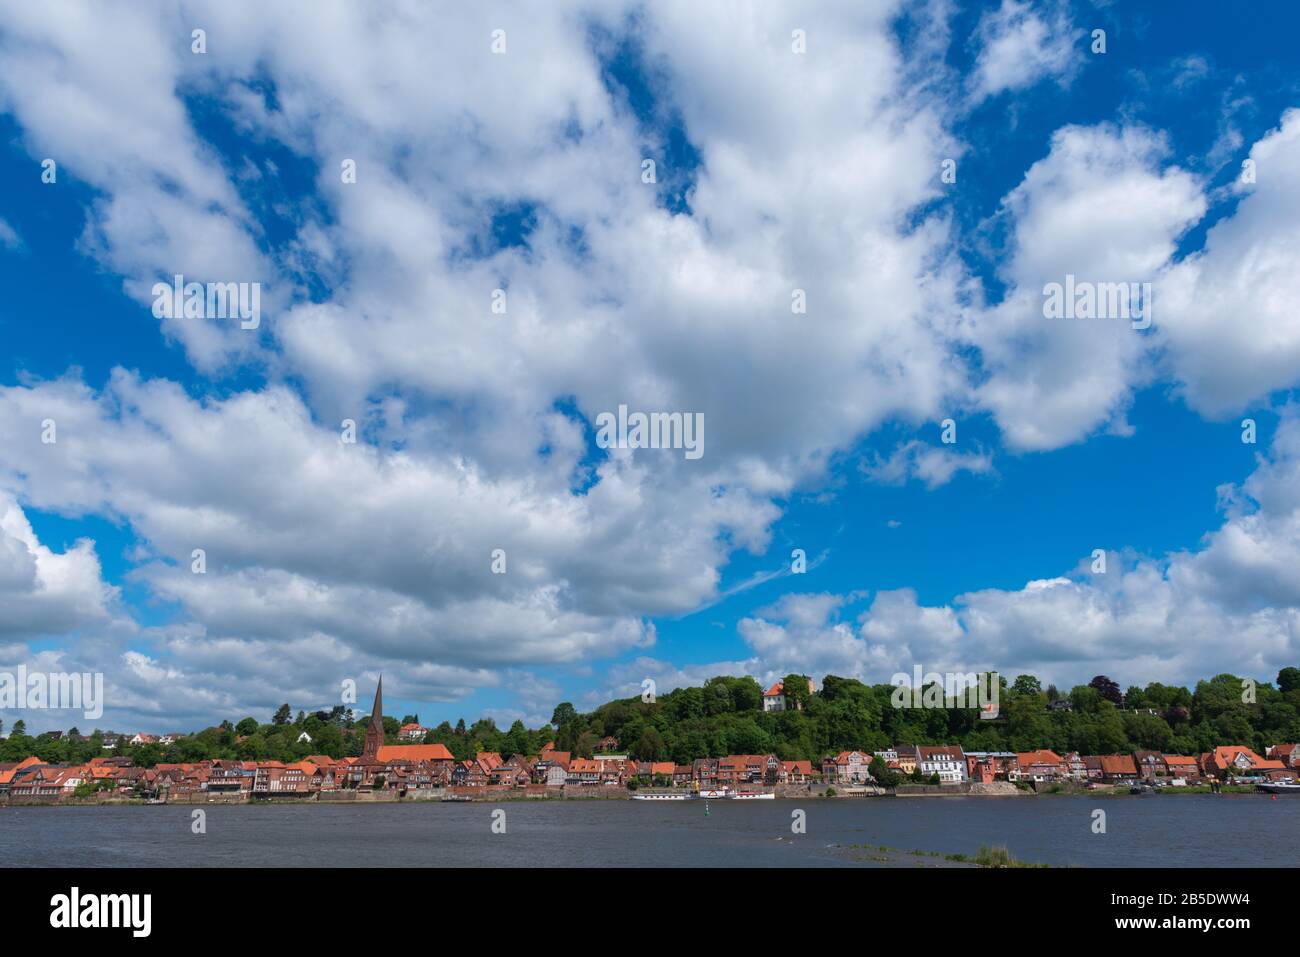 Ville historique de Lauenburg sur la rivière Elbe, Comté de Lauenburg, Schleswig-Holstein, Allemagne du Nord, Europe centrale Banque D'Images